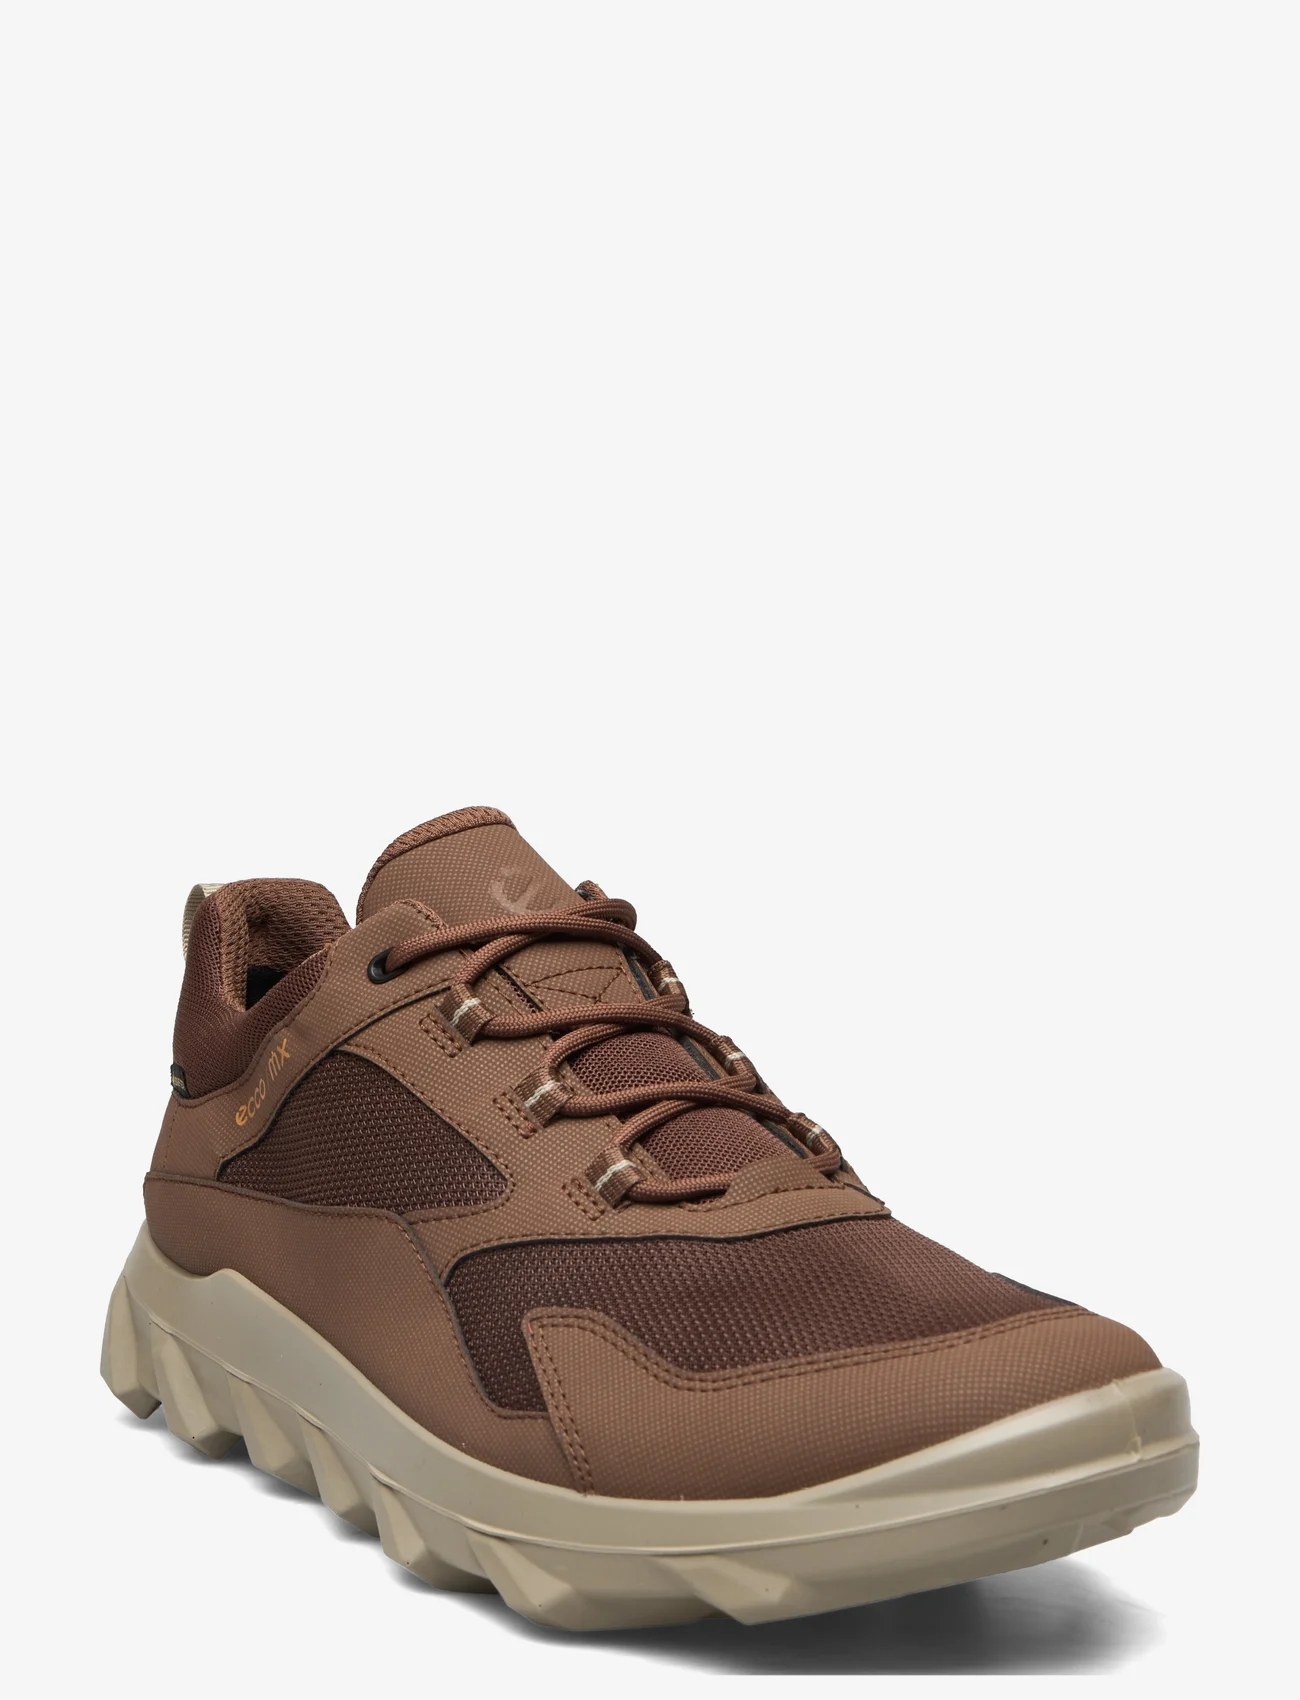 ECCO - MX M - låga sneakers - cocoa brown/cocoa brown - 0